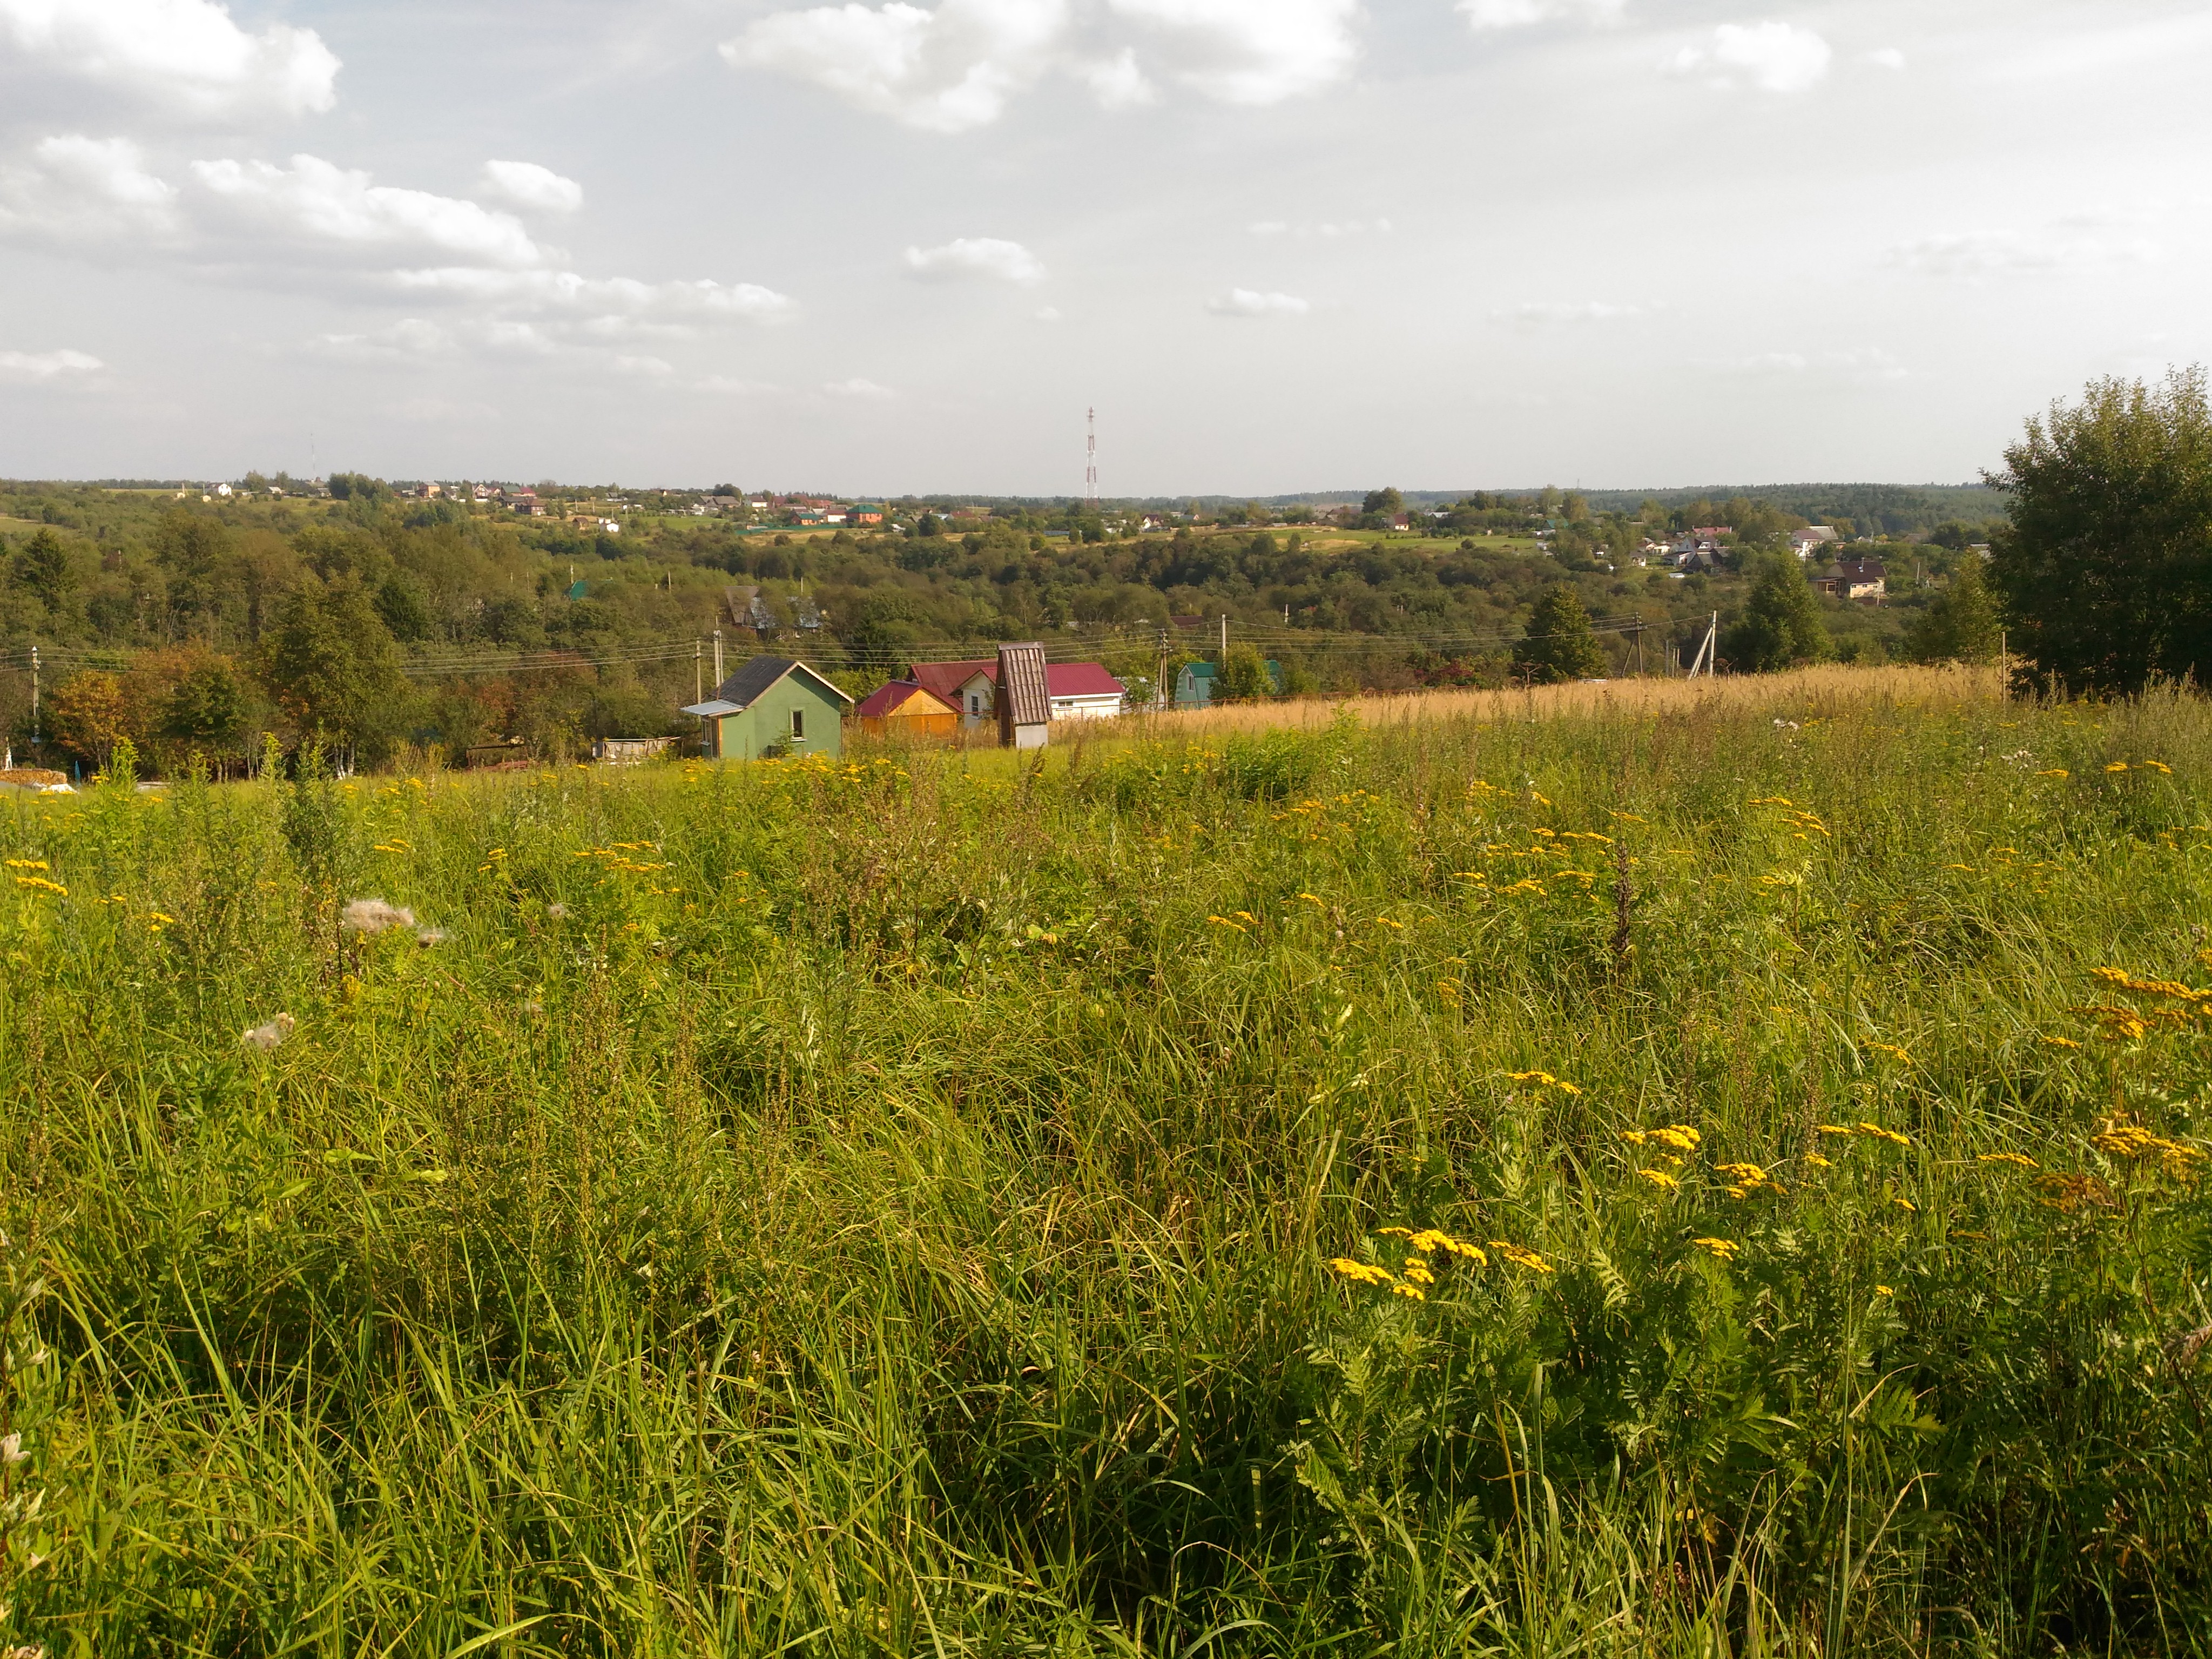 Продажа садового дома в деревне Ченцы по Волоколамскому шоссе СНТ Родник Волоколамского района и участком 7.5 соток.